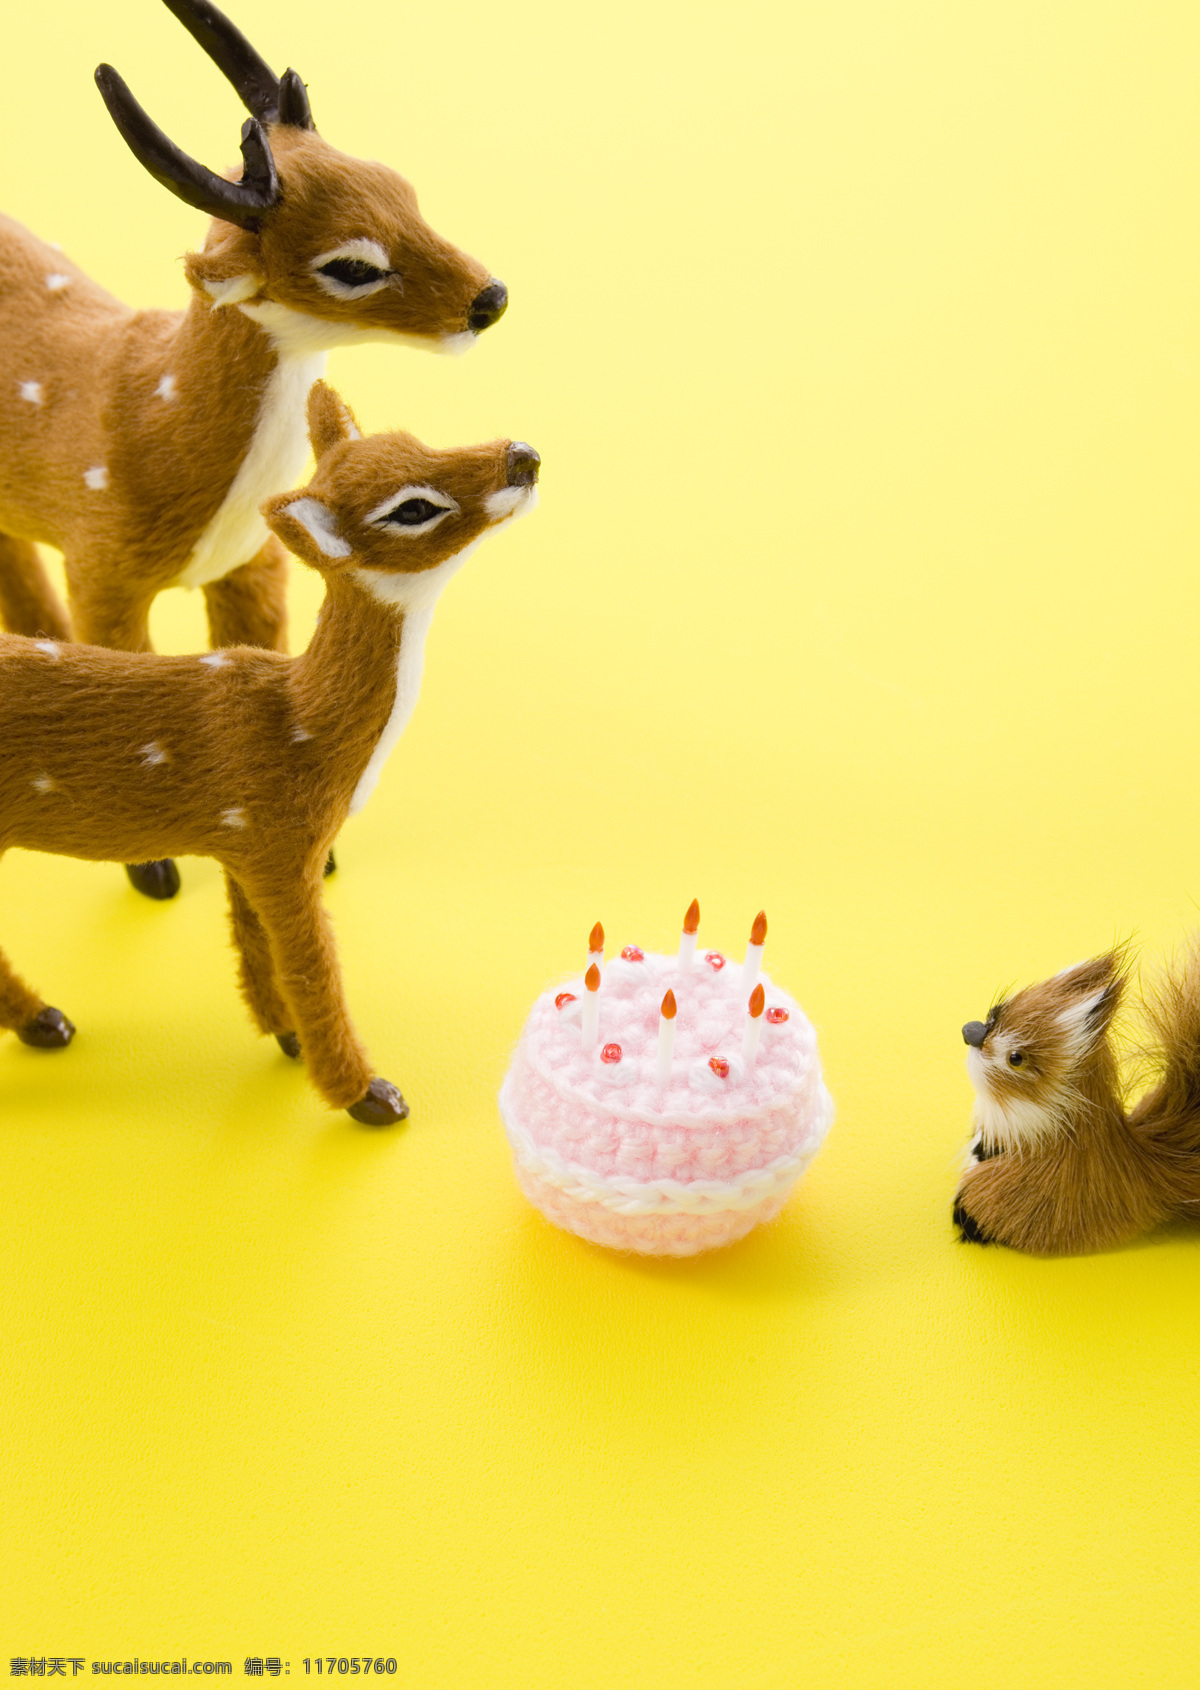 生日蛋糕 小动物 礼物 蛋糕 生意 伙伴 黄色背景 生日图片 生活百科